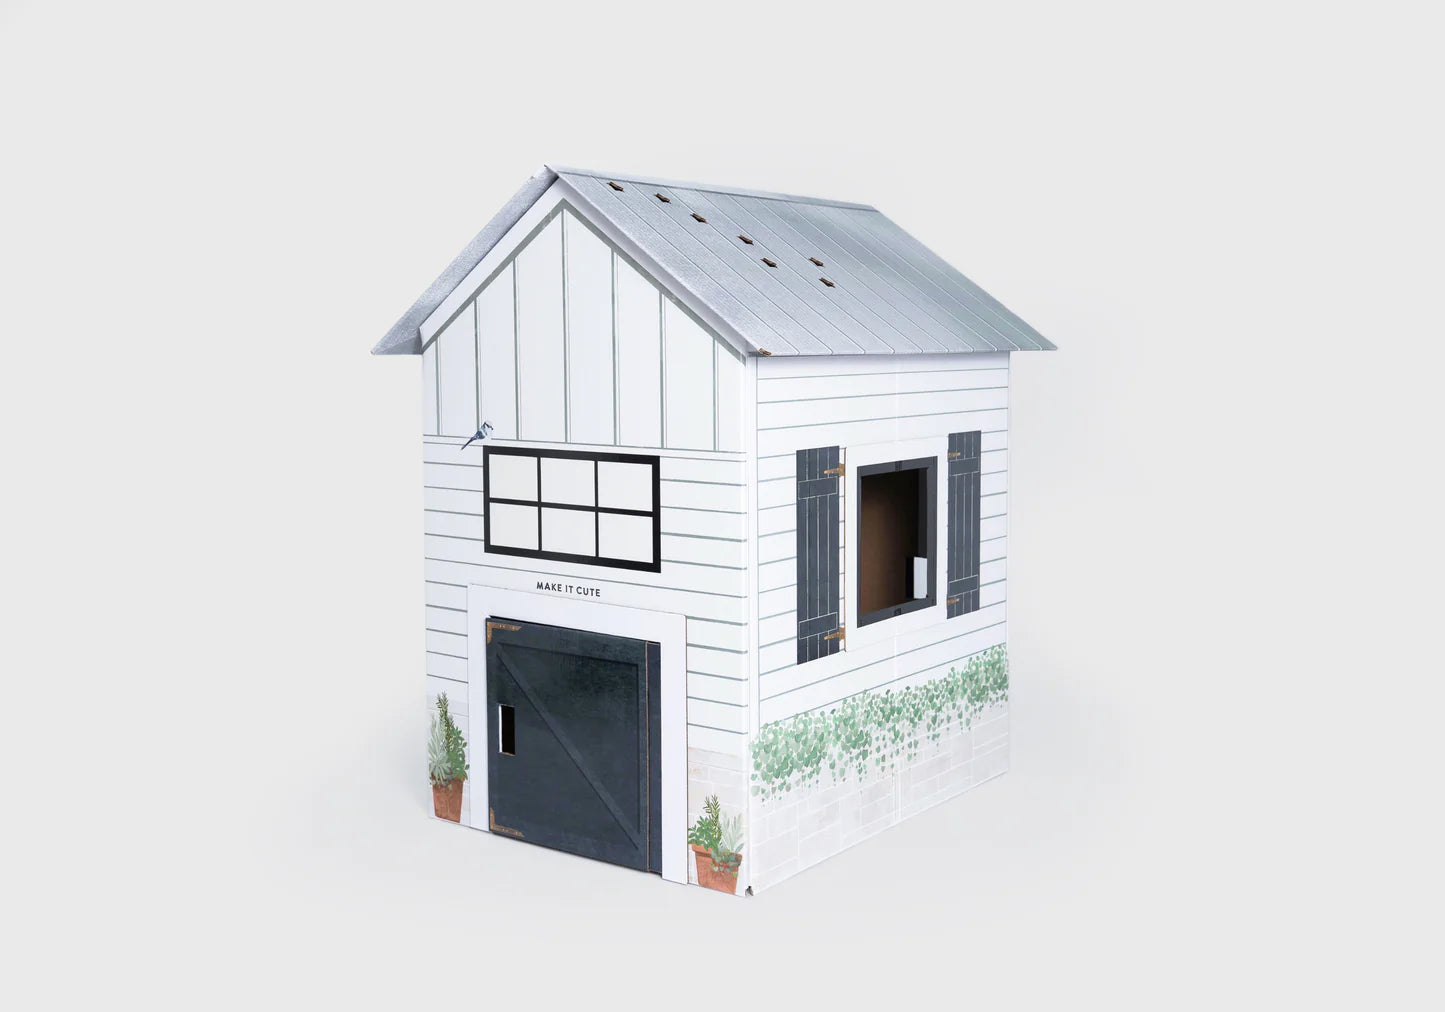 Make It Cute™ - Modern Farmhouse